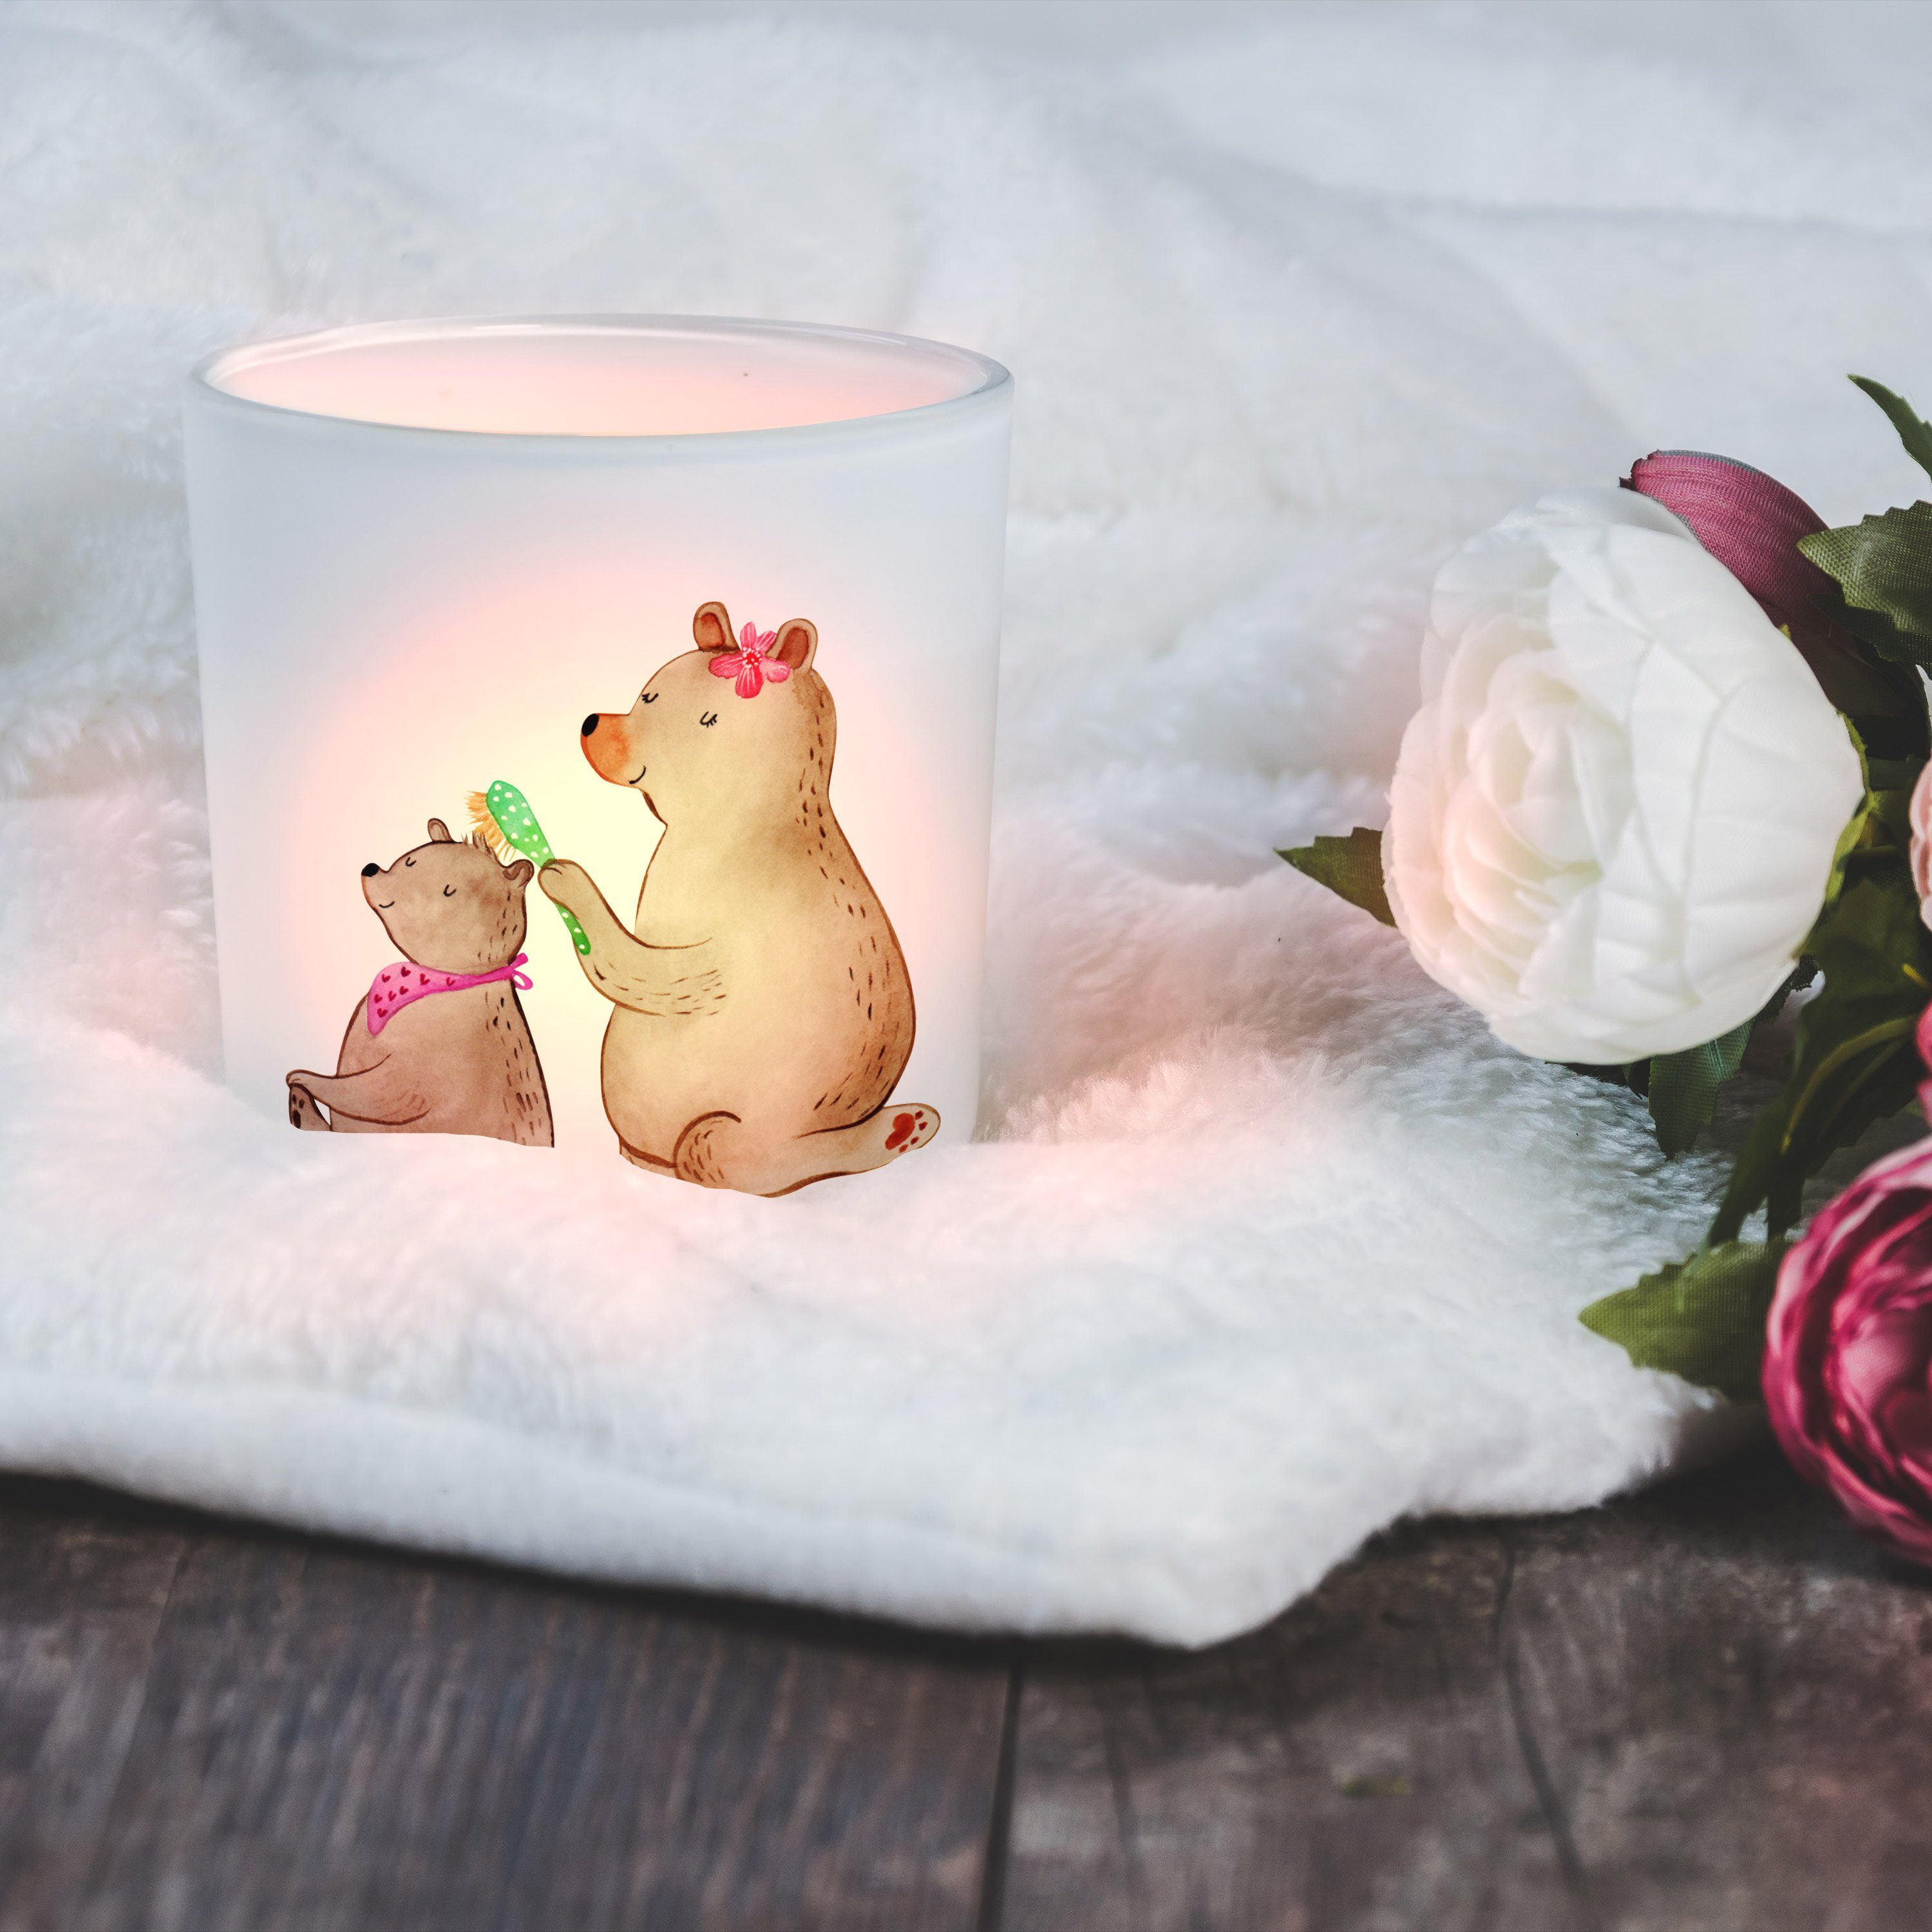 Mr. & Mrs. Panda Windlicht mit Kind Mama, Muttertag, - Bär (1 Kerzenlicht, St) Geschenk, Transparent 